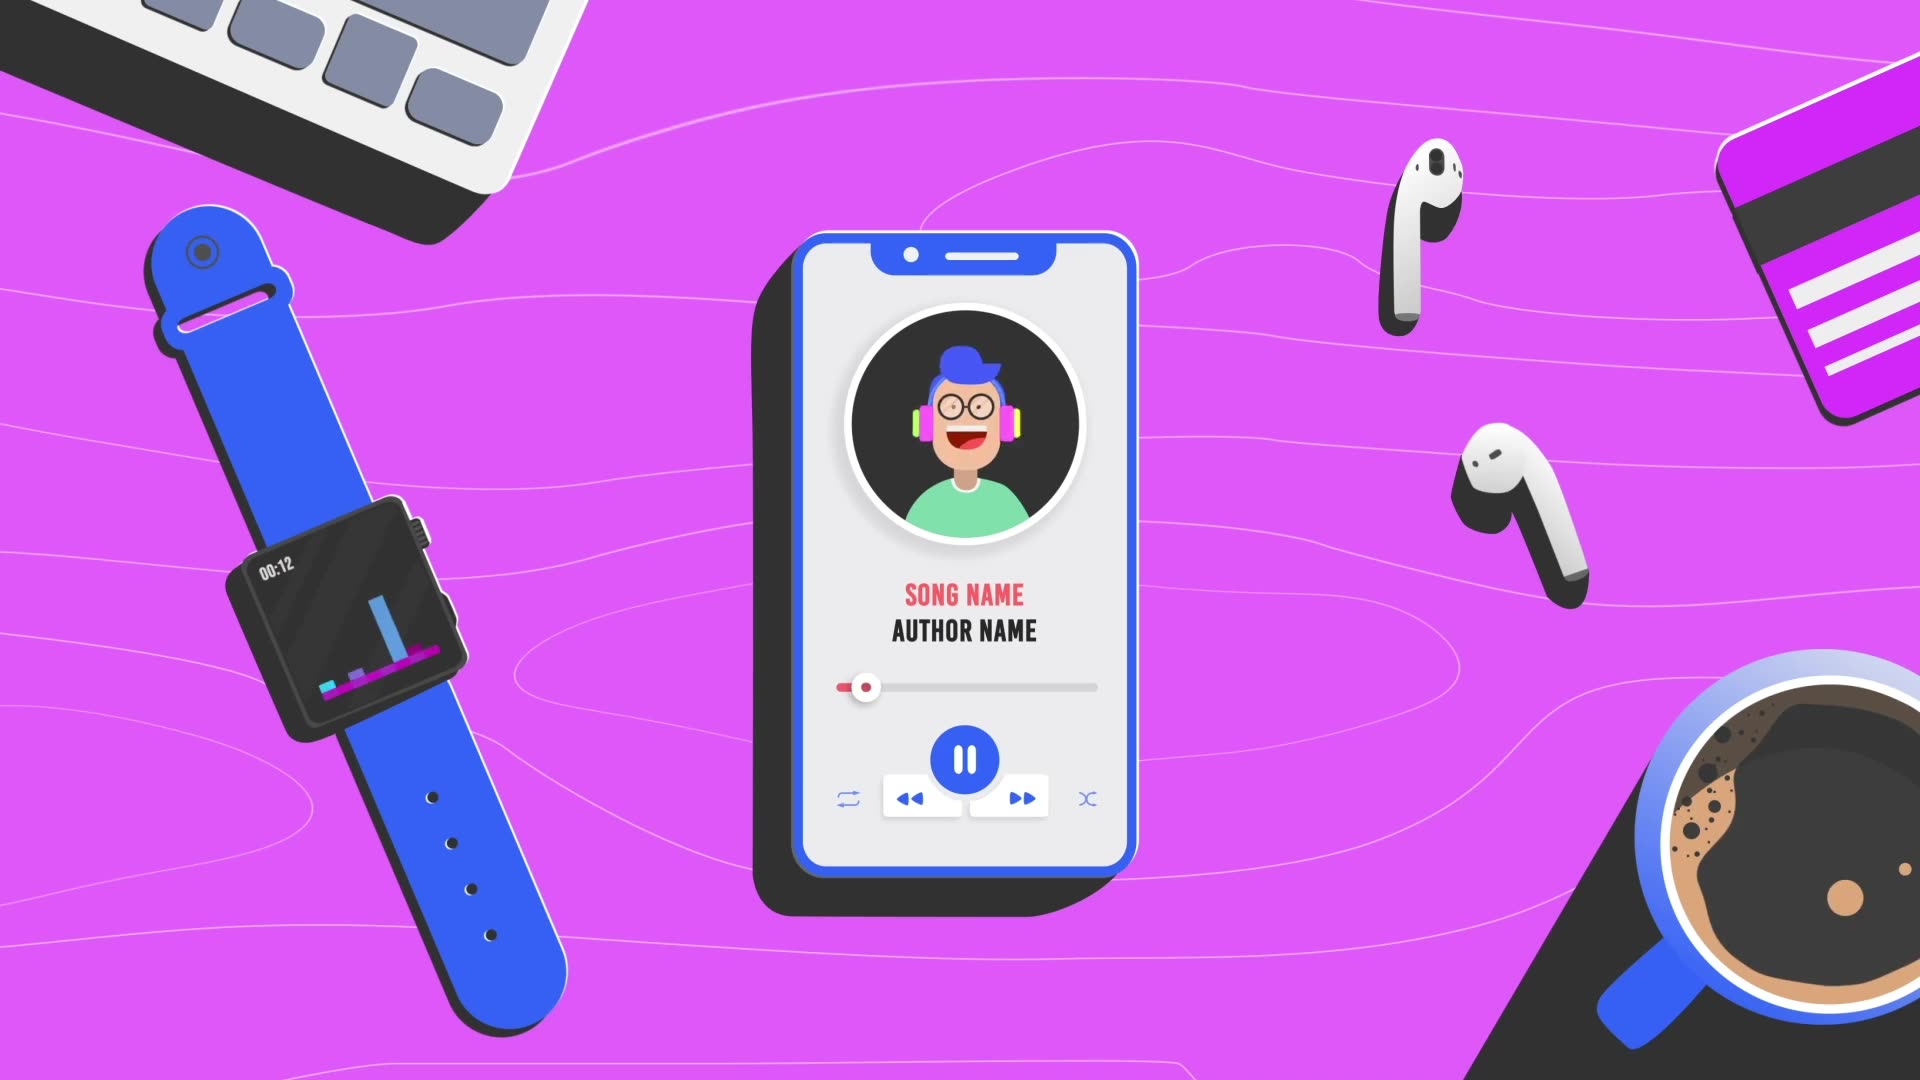 Smartphone Music Visualizer là một công cụ độc đáo cho phép bạn trải nghiệm âm nhạc của mình với các hiệu ứng hình ảnh sinh động. Điều này có nghĩa là, bạn có thể thưởng thức bản nhạc yêu thích của mình trên chiếc smartphone của mình với những họa tiết sóng nhạc đẹp mắt, tuyệt đẹp.